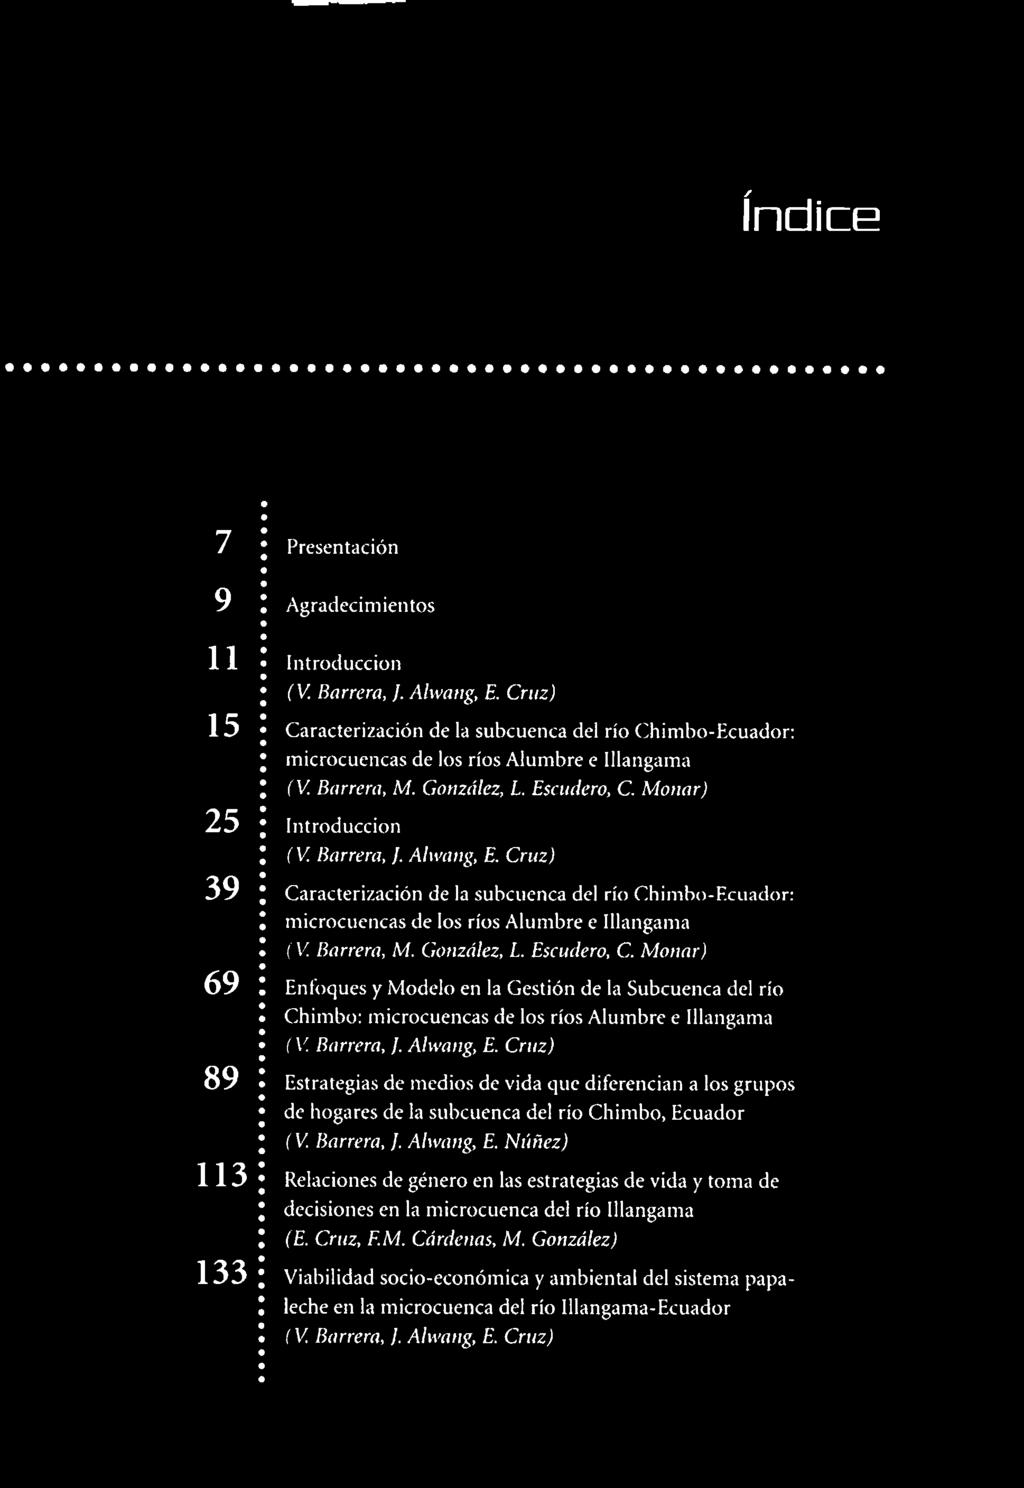 Cruz, F.M. Cárdenas, M. González) Viabilidad socio-económica y ambiental del sistema papaleche en la microcuenca del río Illangama-Ecuador (V. Barrera, J. Alwang, E.